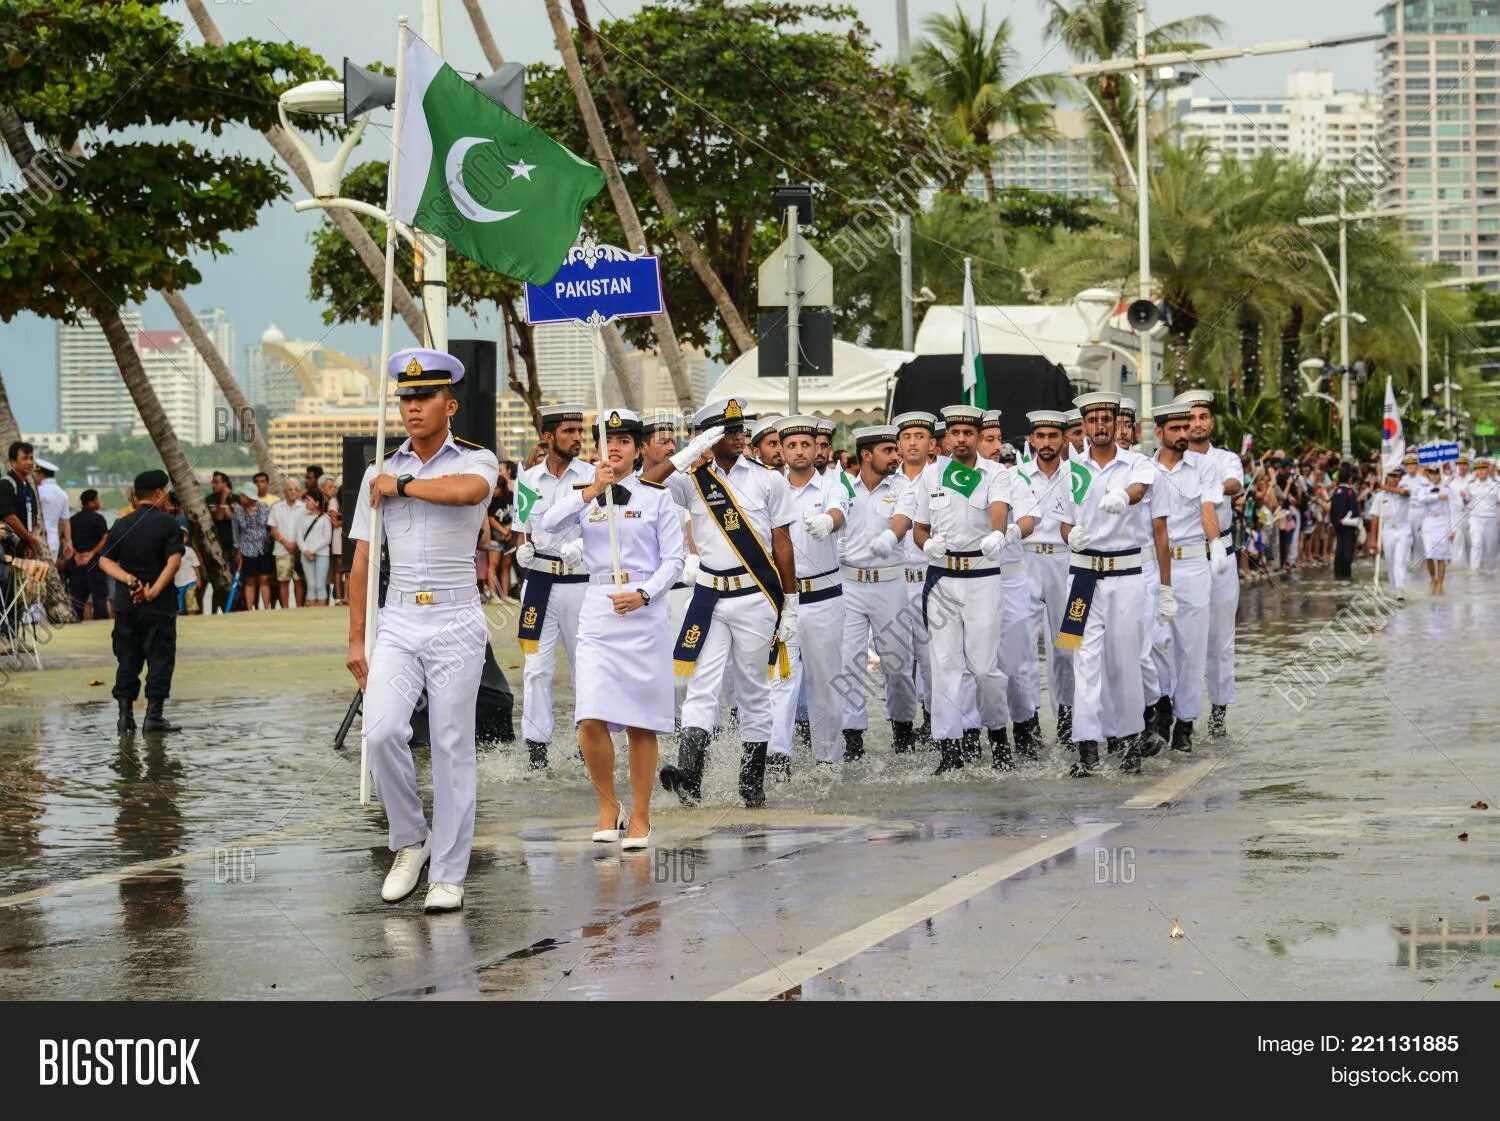 Видео парад в тайланде. Парад ВМФ В Паттайе... Парад в Паттайе российские моряки. Военный парад моряков в Паттайе. Русские моряки маршируют в Таиланде.